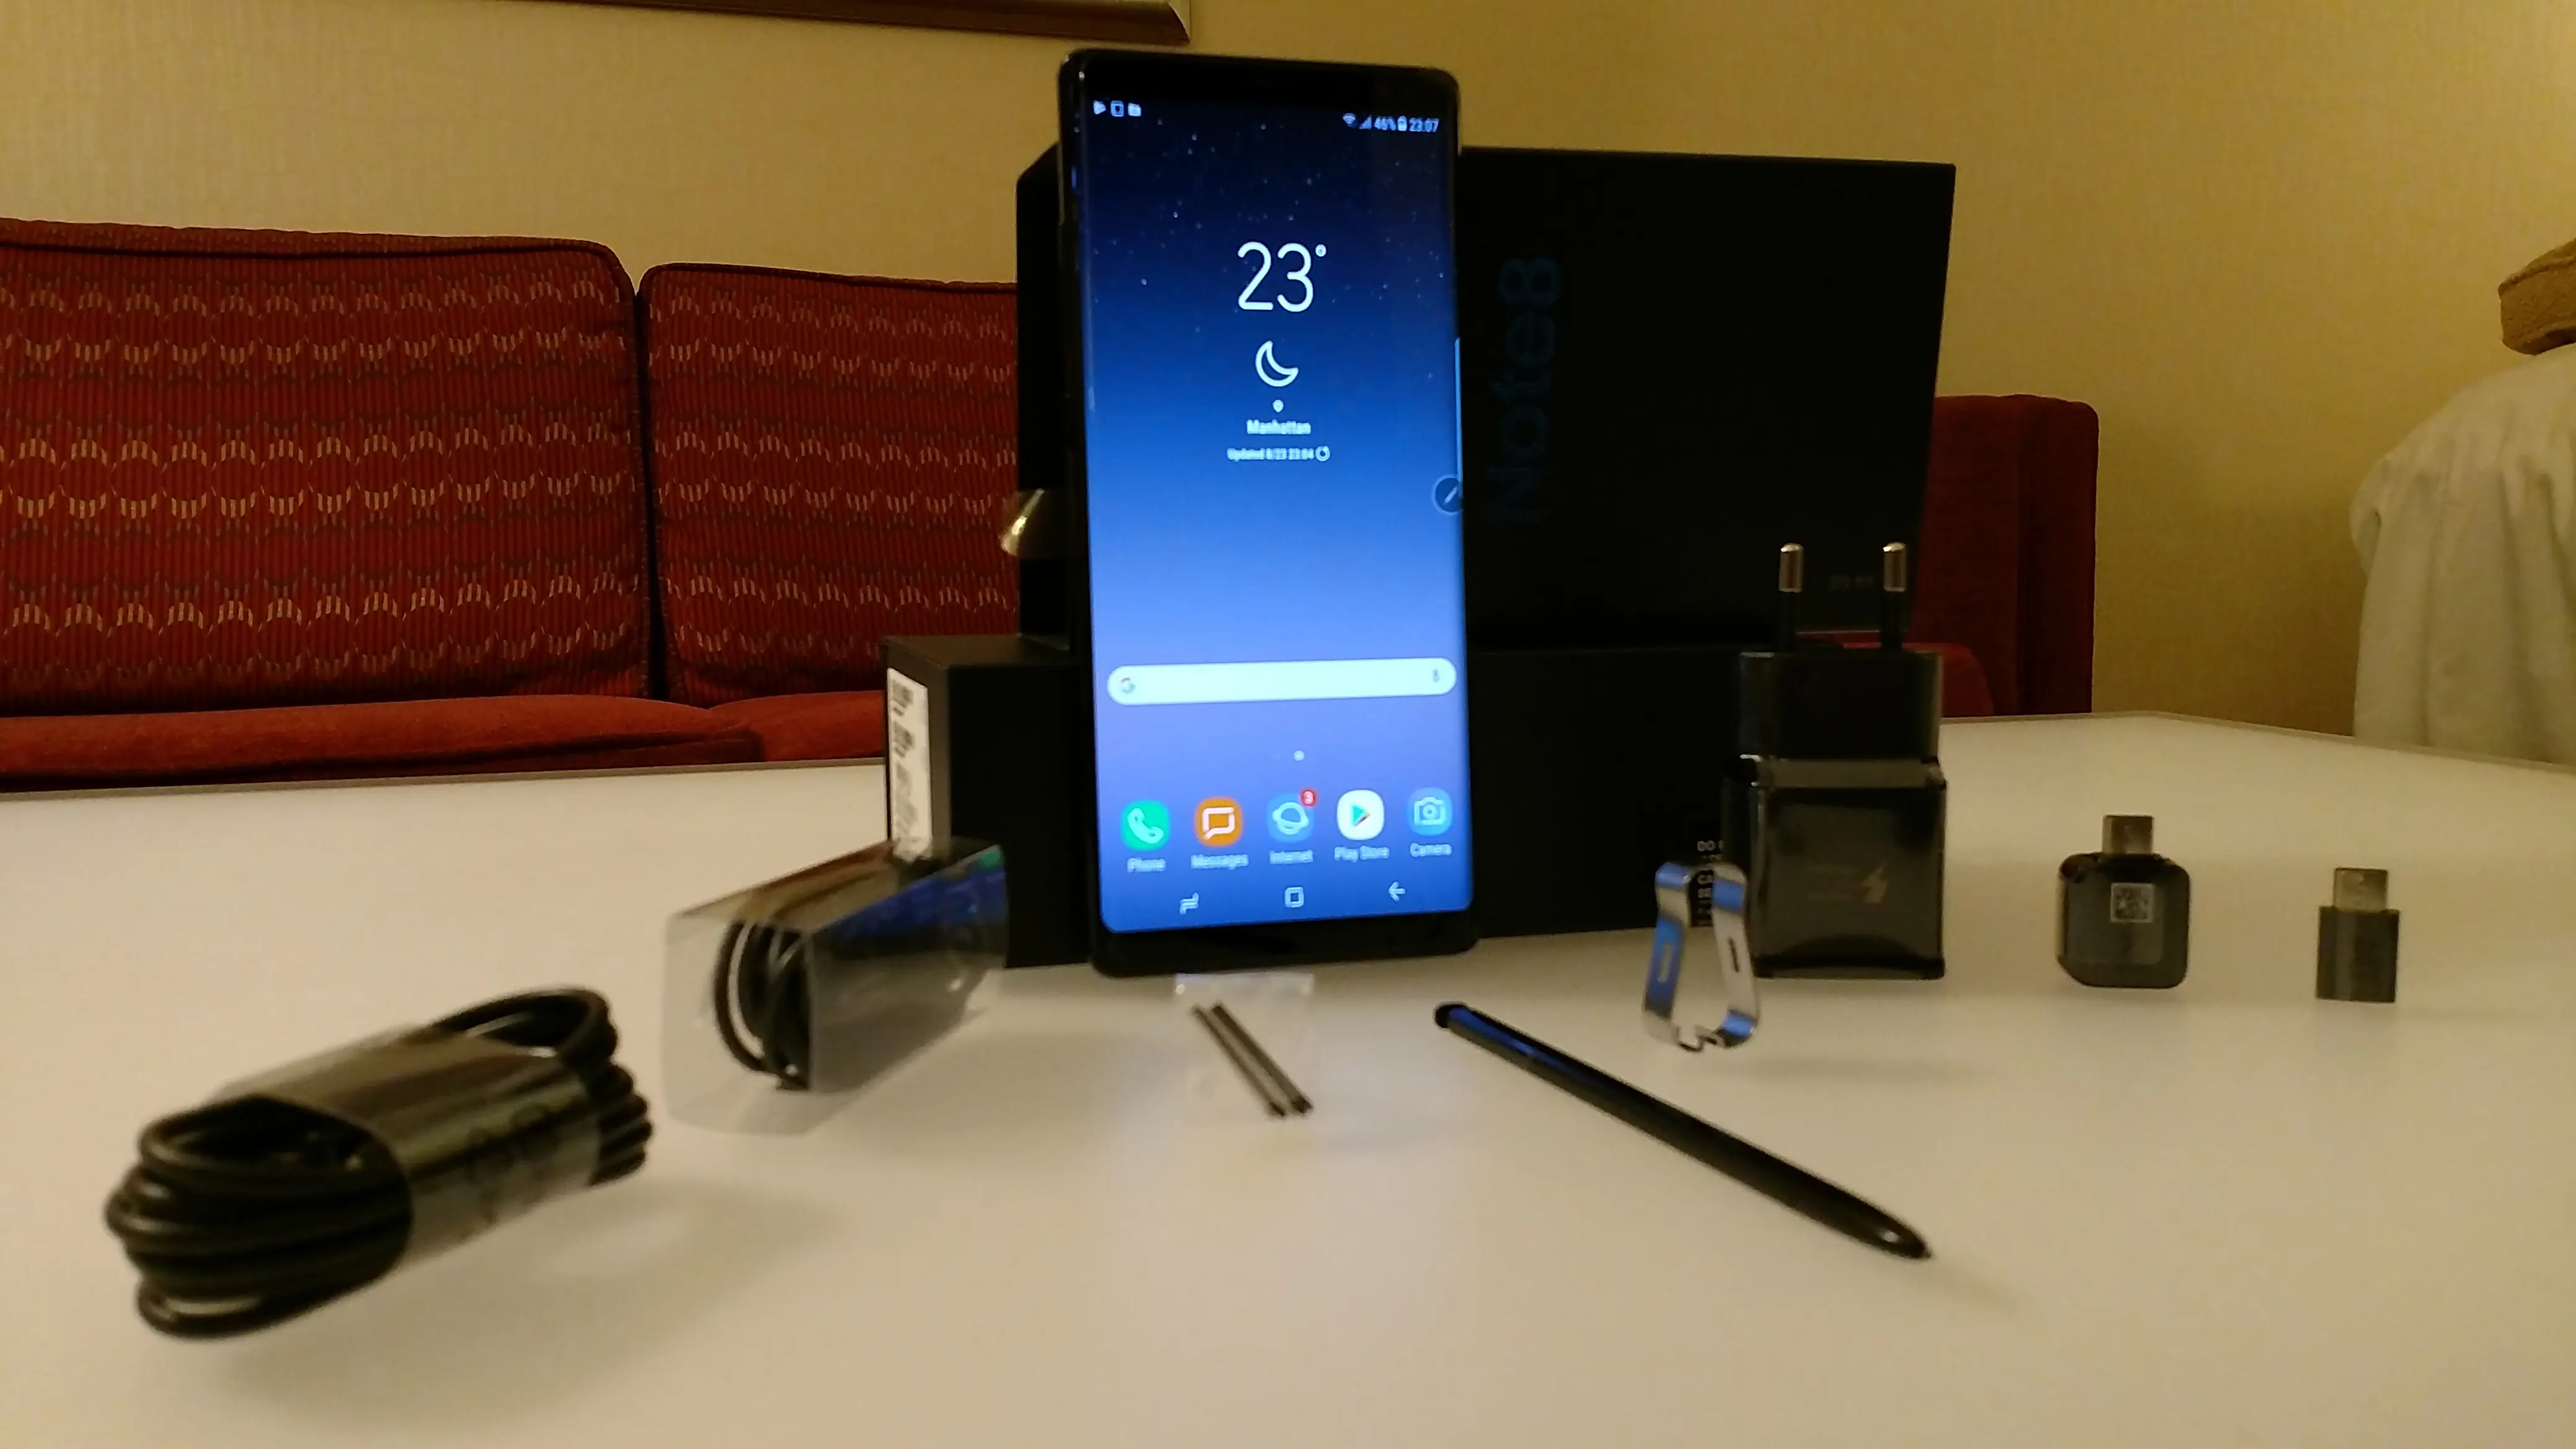 Samsung Galaxy Note 8 dengan boks penjualan beserta isinya. (Liputan6.com/Yuslianson)